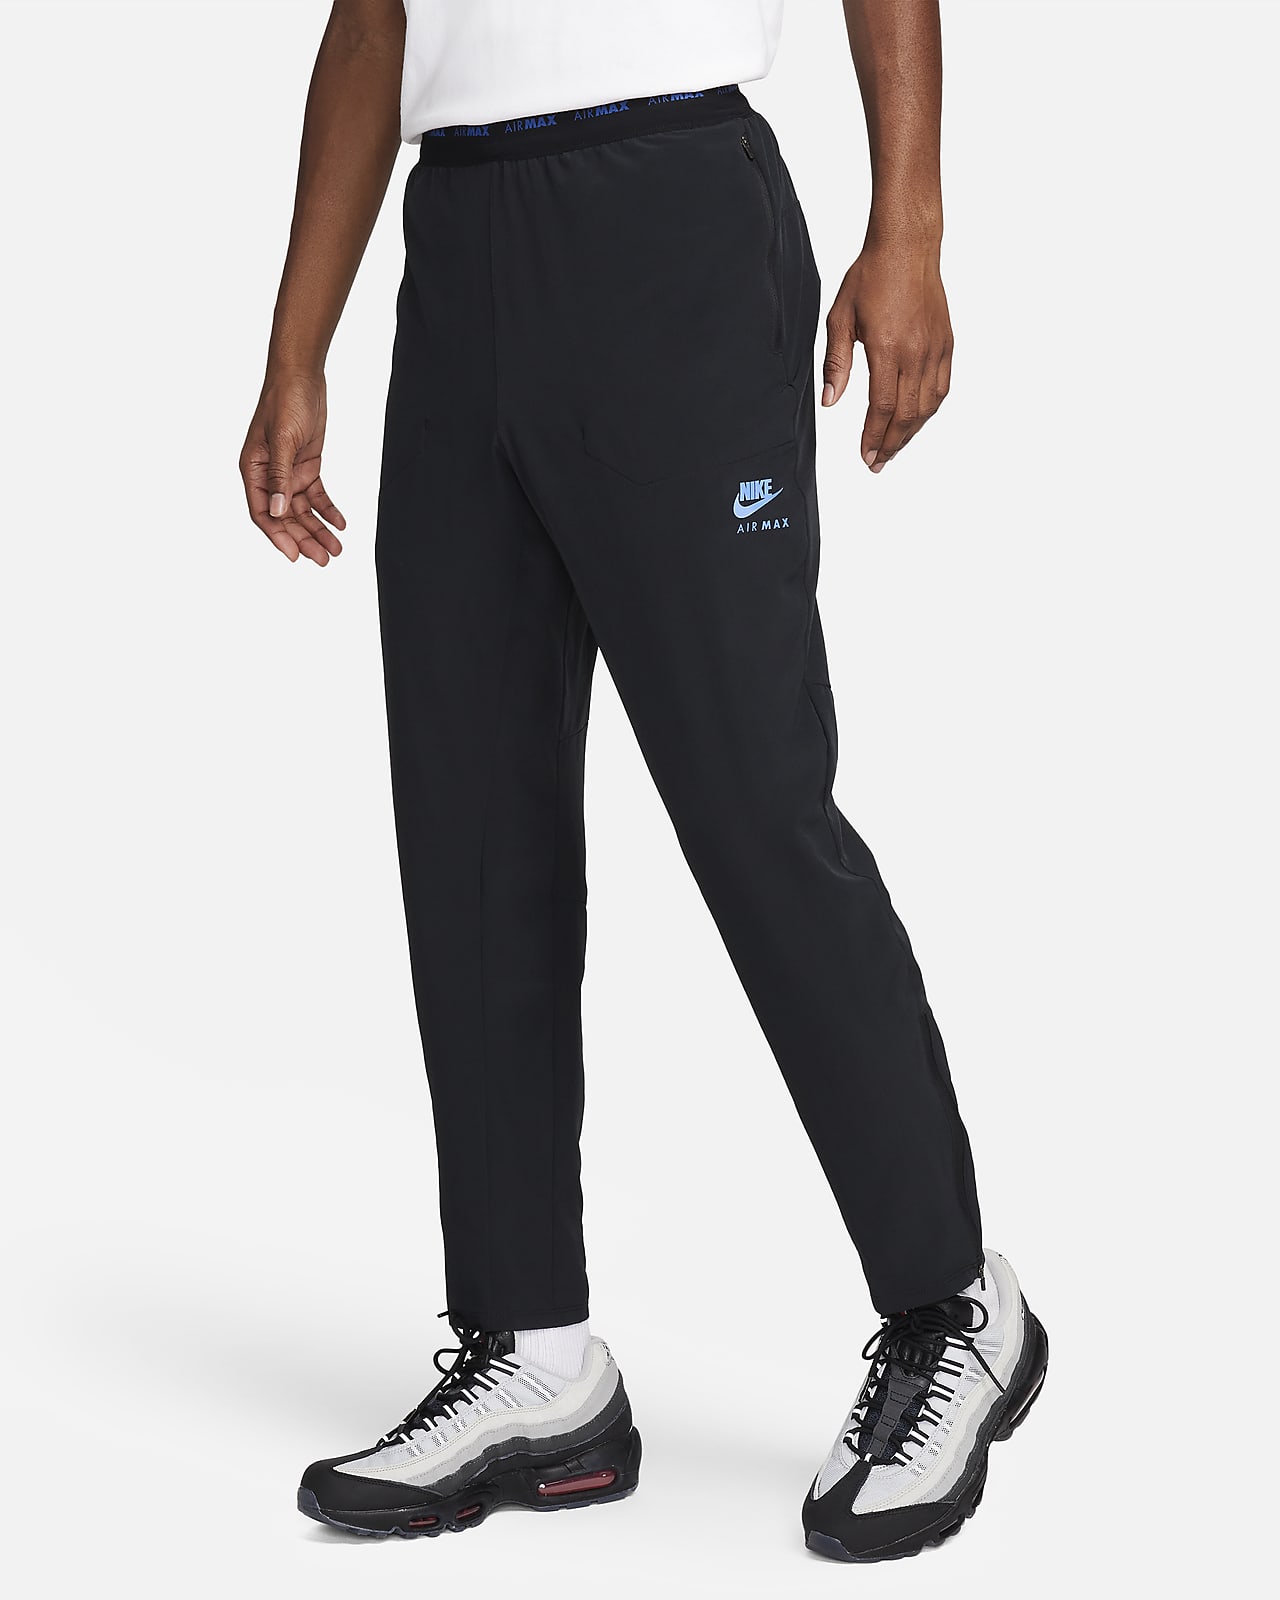 Pánské tkané kalhoty Nike Air Max Dri-FIT